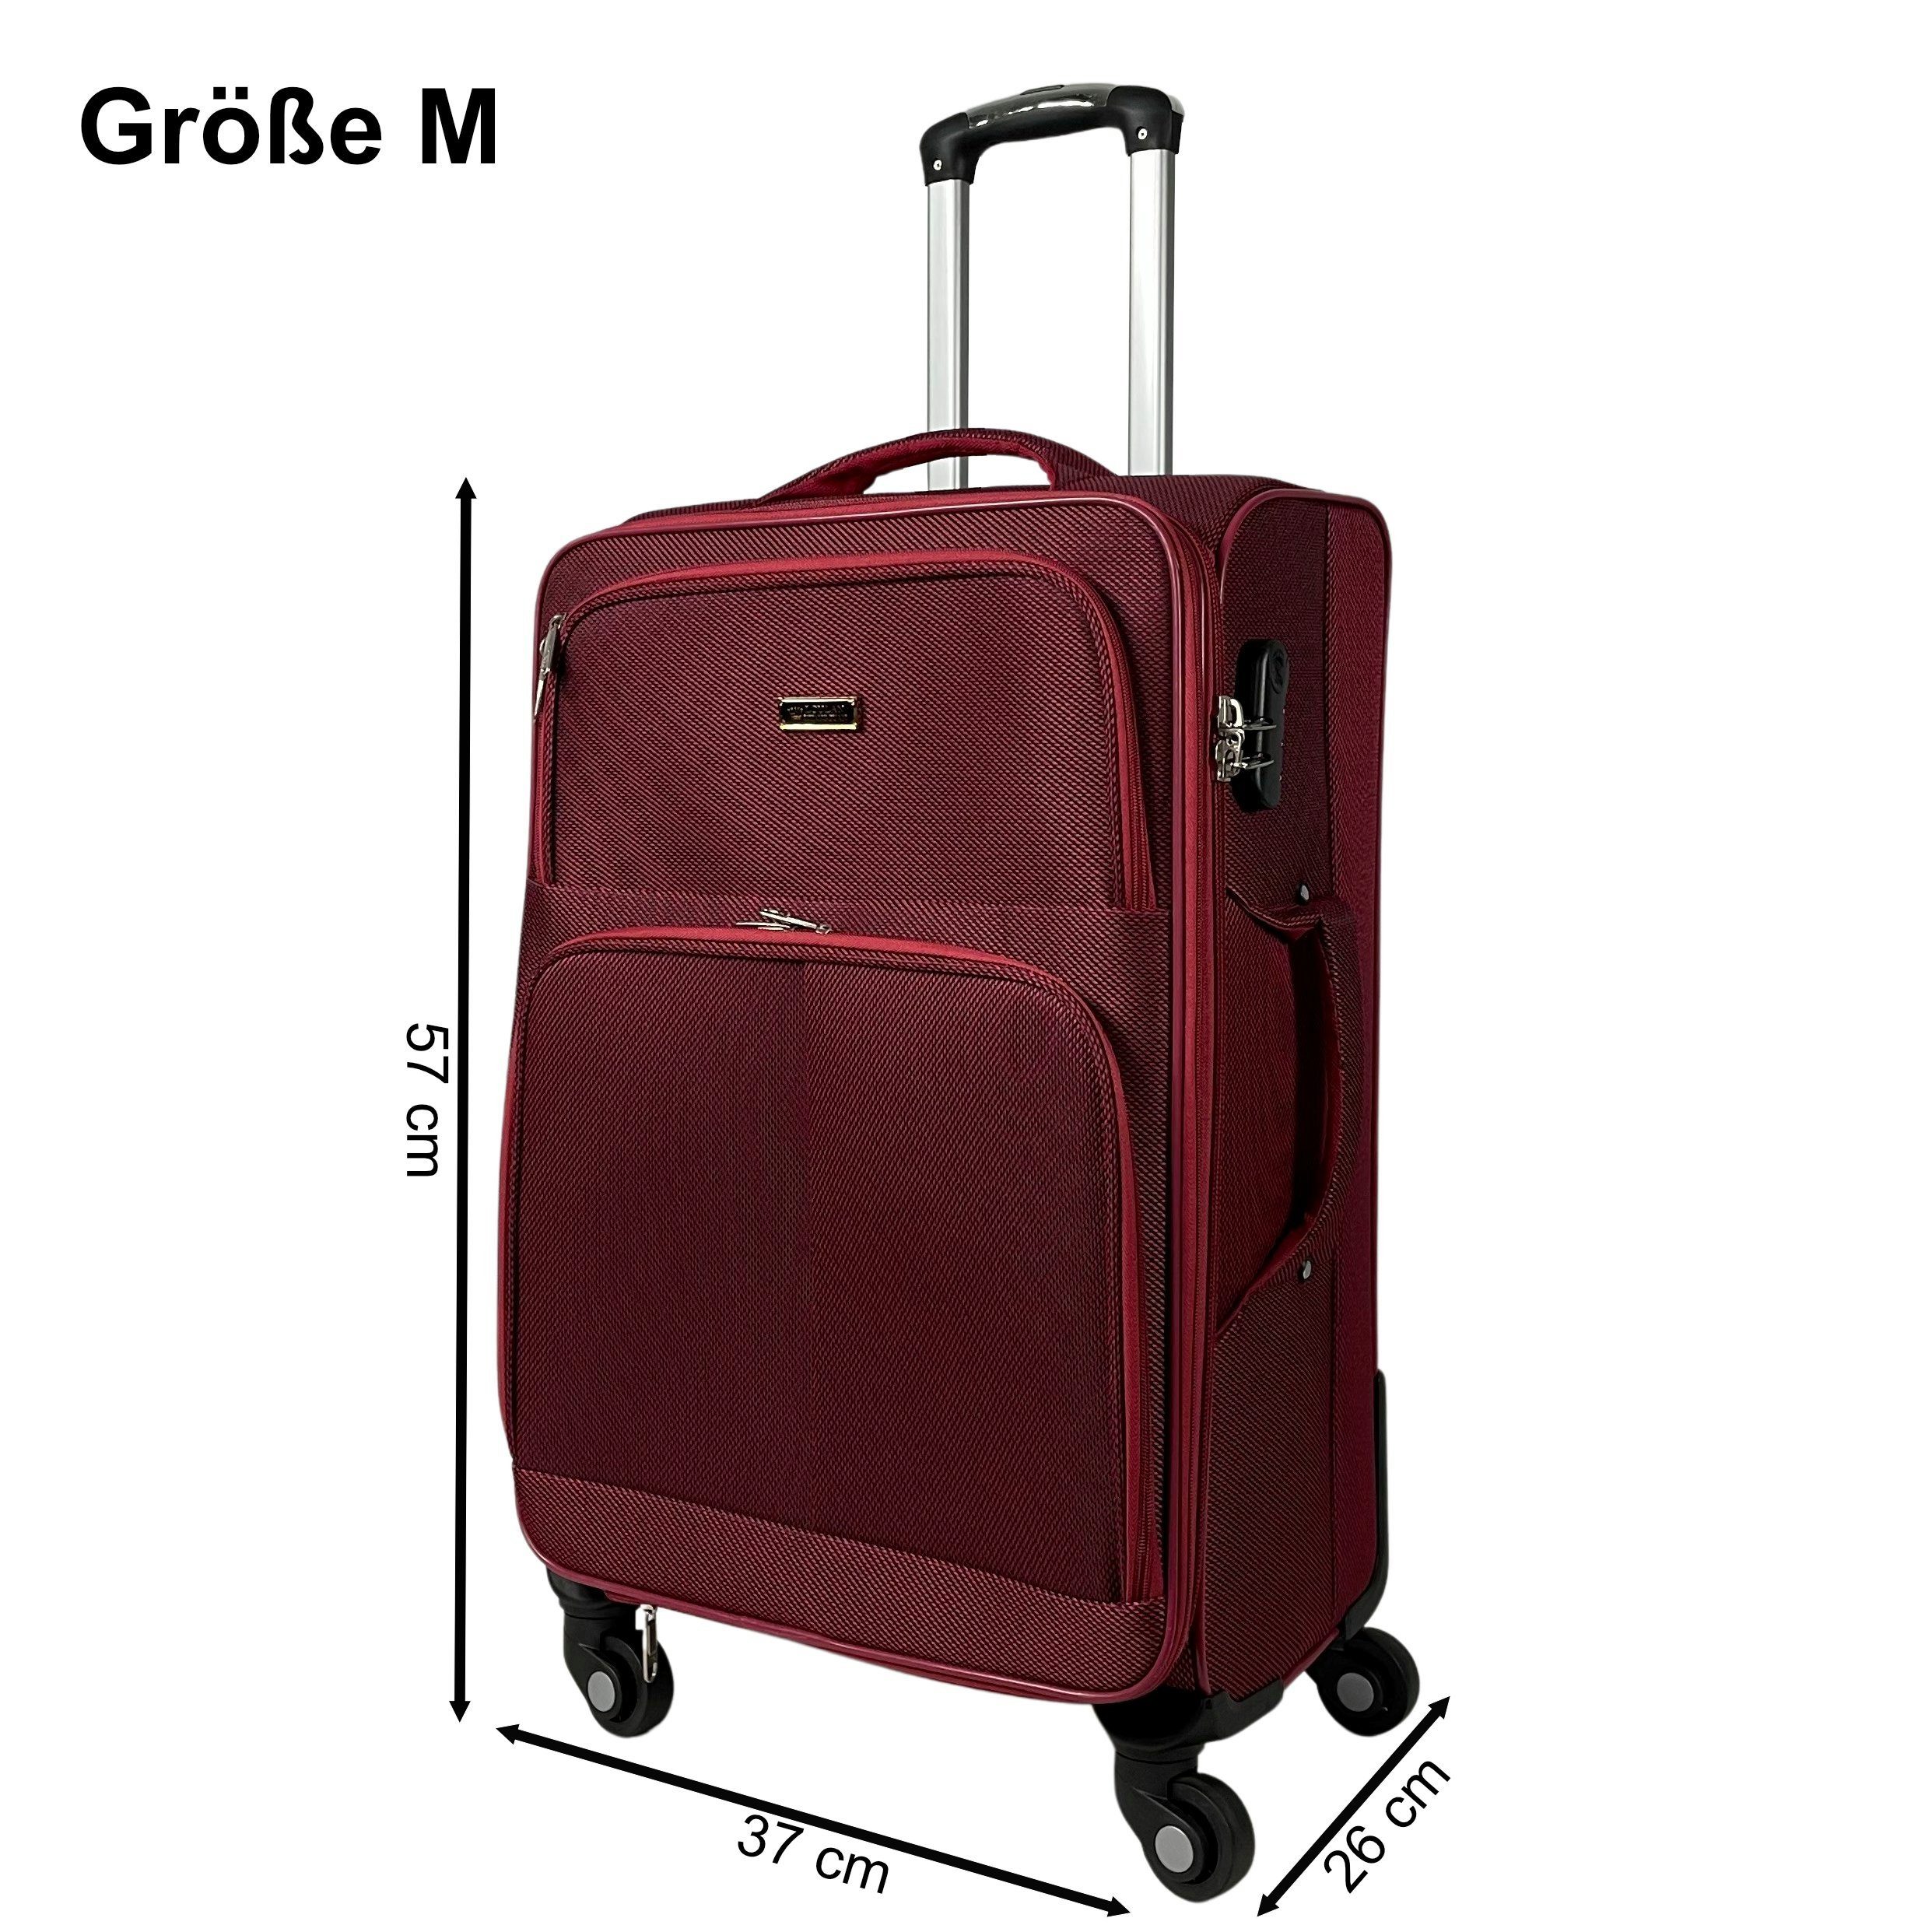 MTB Koffer Stoffkoffer 4-Rollen Trolley Koffer Reisekoffer Tasche  Reisetasche